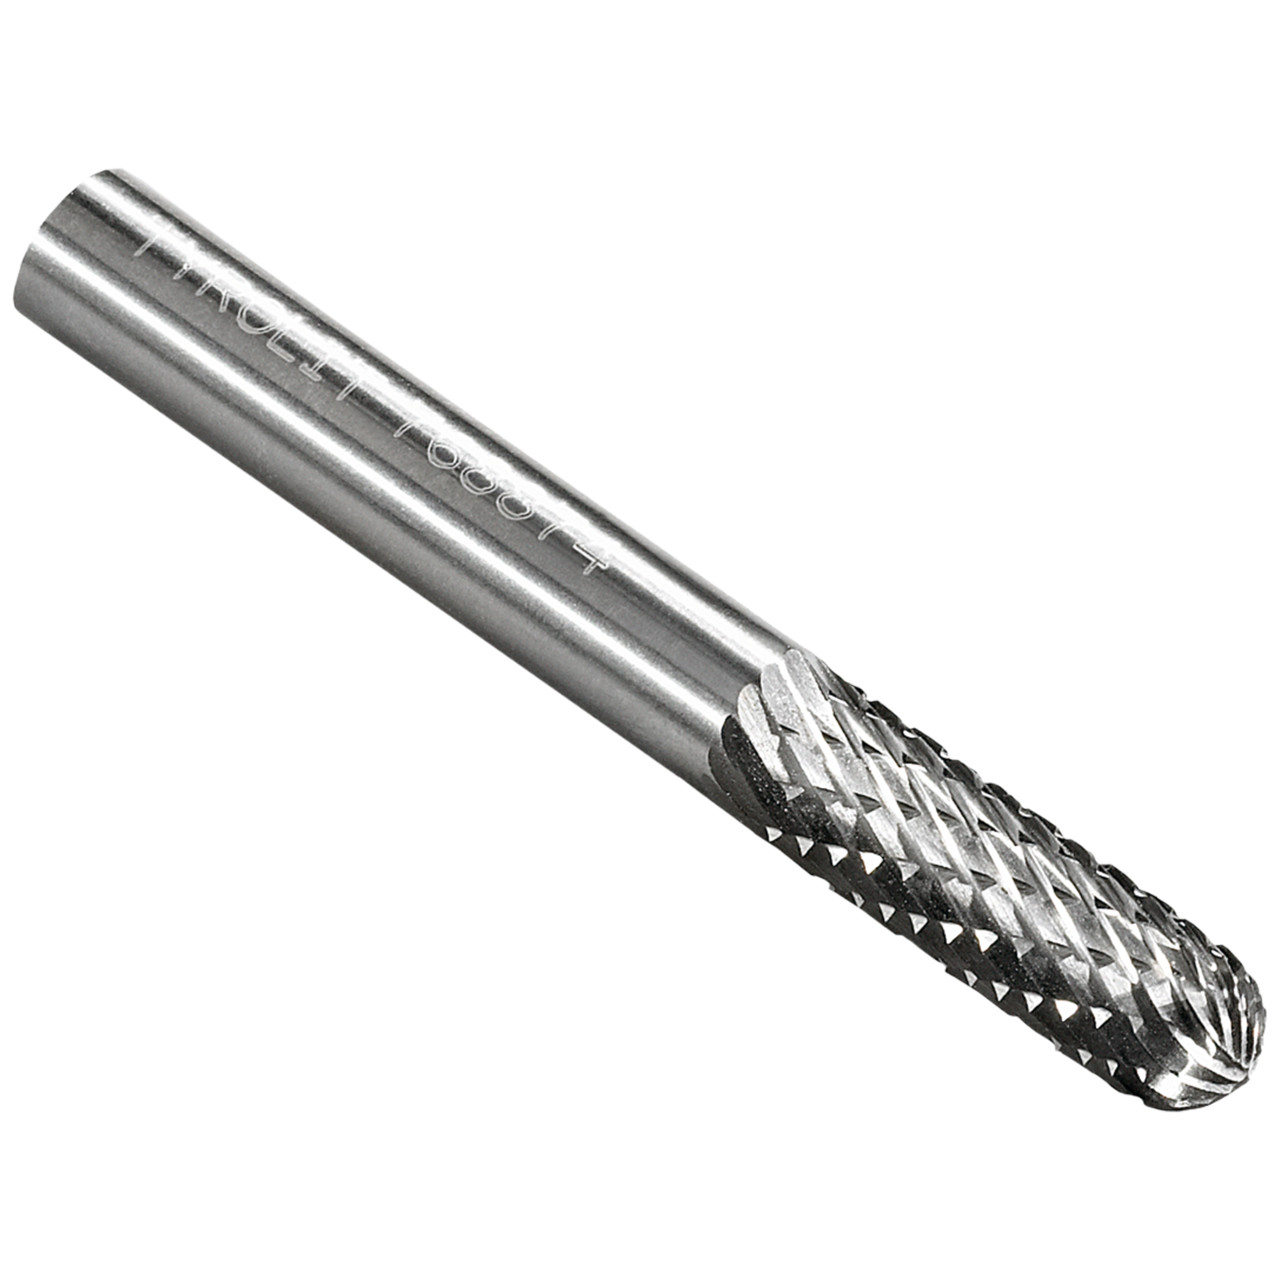 TYROLIT Hartmetallfräser DxT-SxL 6x19-6x50 Für Gusseisen, Stahl und Edelstahl, Form: 52WRC - Walzenrund, Art. 768874